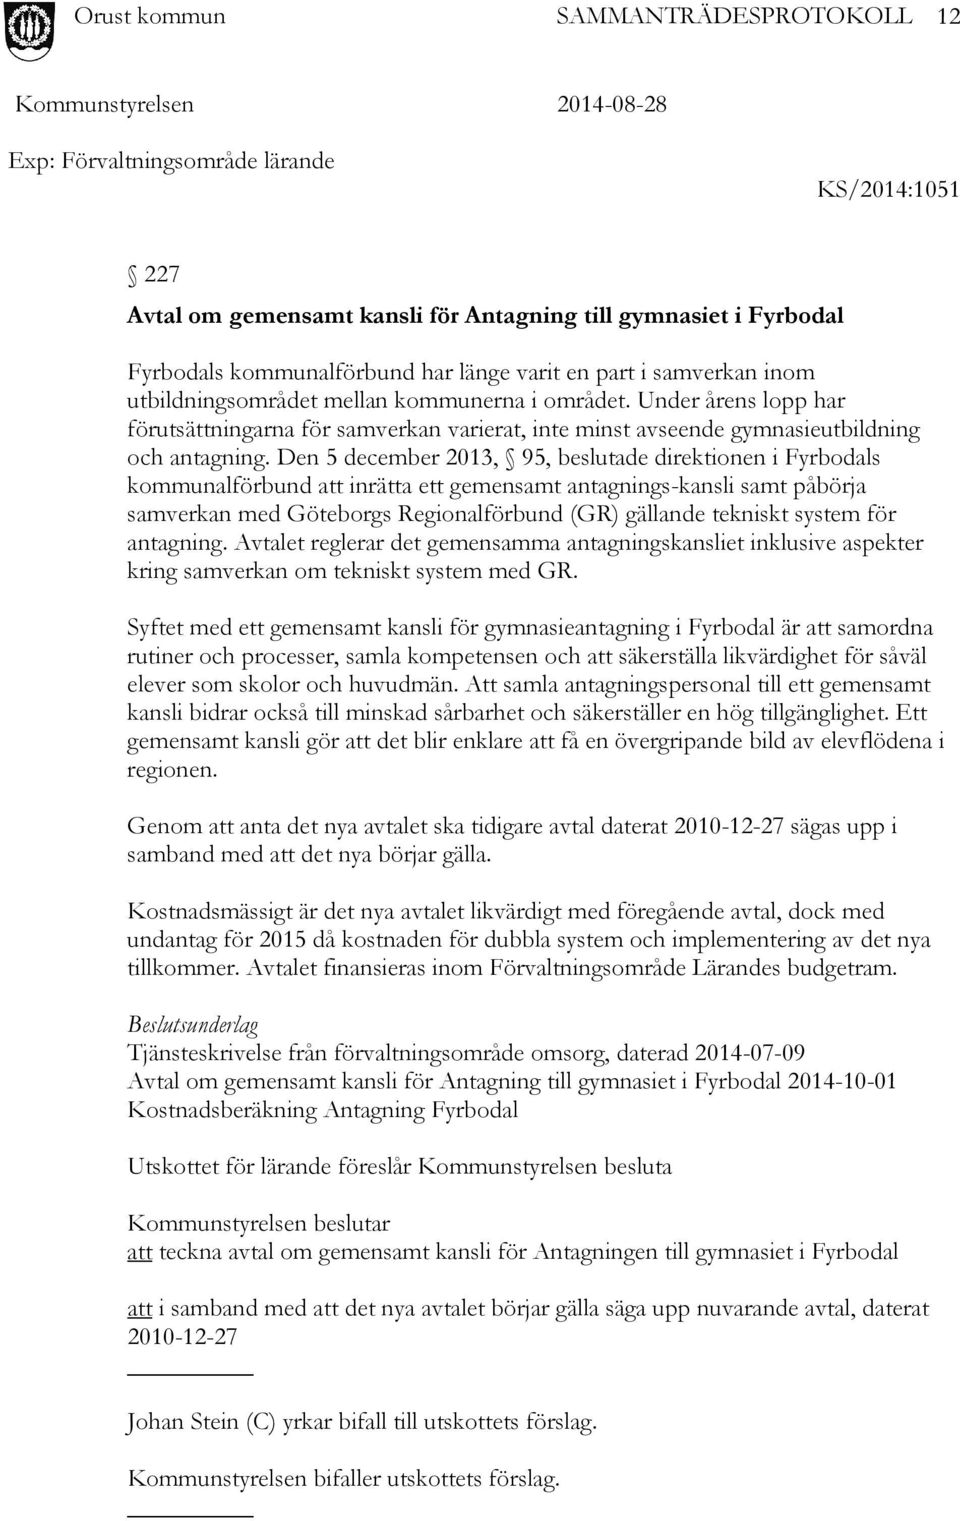 Den 5 december 2013, 95, beslutade direktionen i Fyrbodals kommunalförbund att inrätta ett gemensamt antagnings-kansli samt påbörja samverkan med Göteborgs Regionalförbund (GR) gällande tekniskt